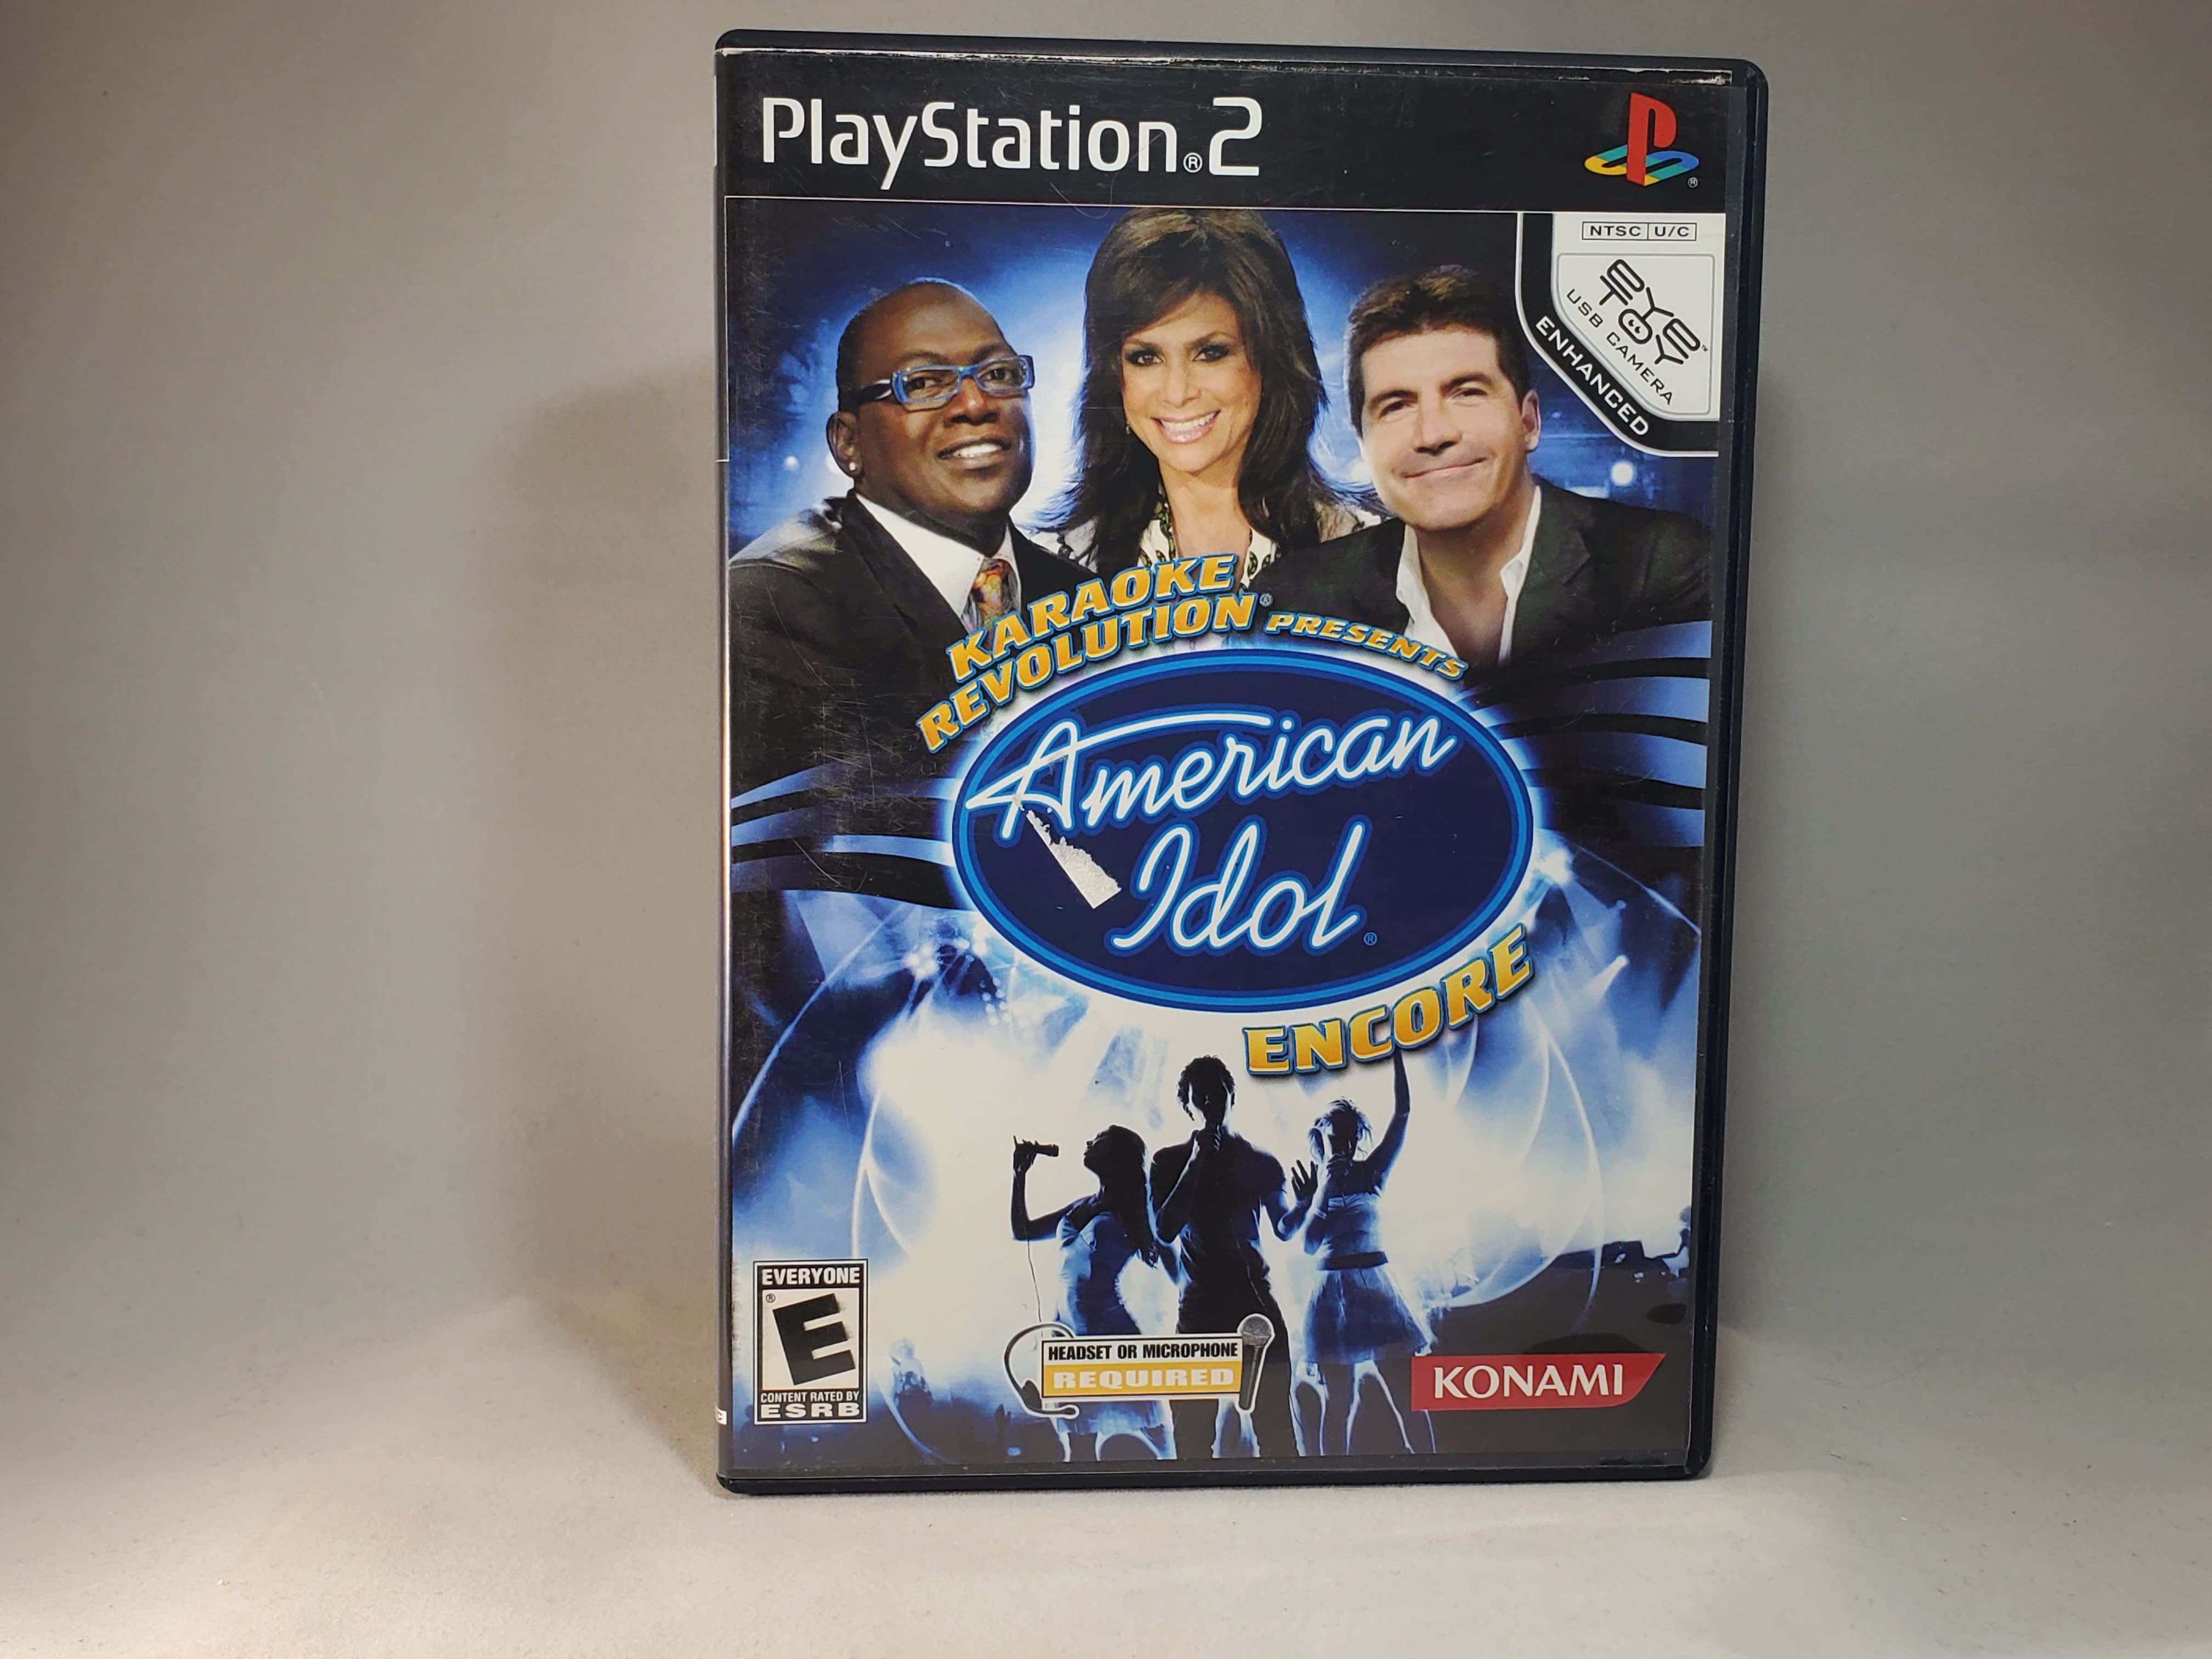 Playstation 2 Karaoke Revolution American Idol Encore Geek-Is-Us